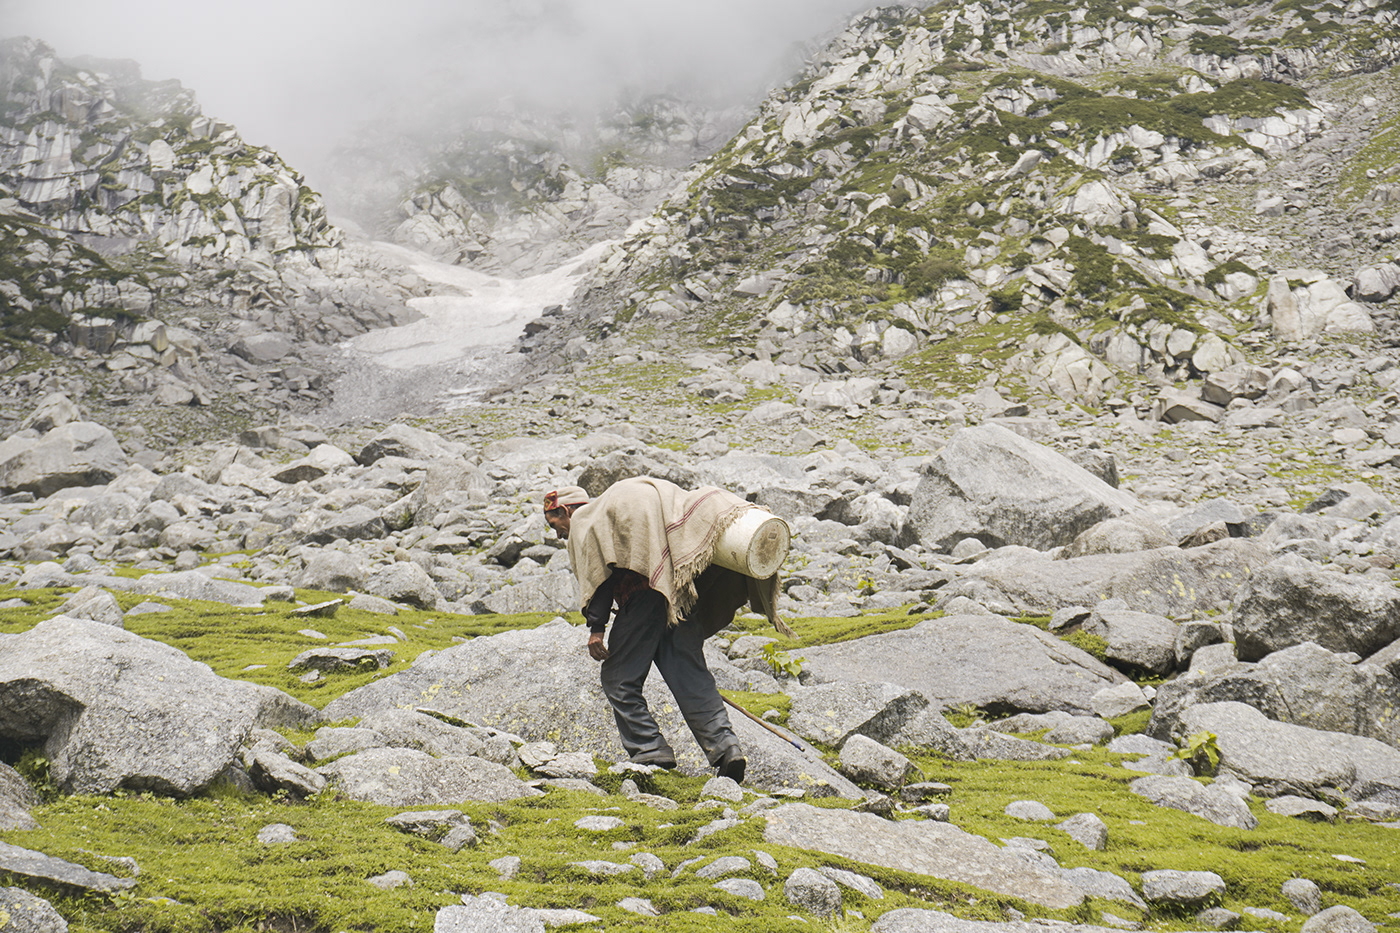 himalayas lamb mountains nomad Outdoor Photography  photoshoot portrait shephard